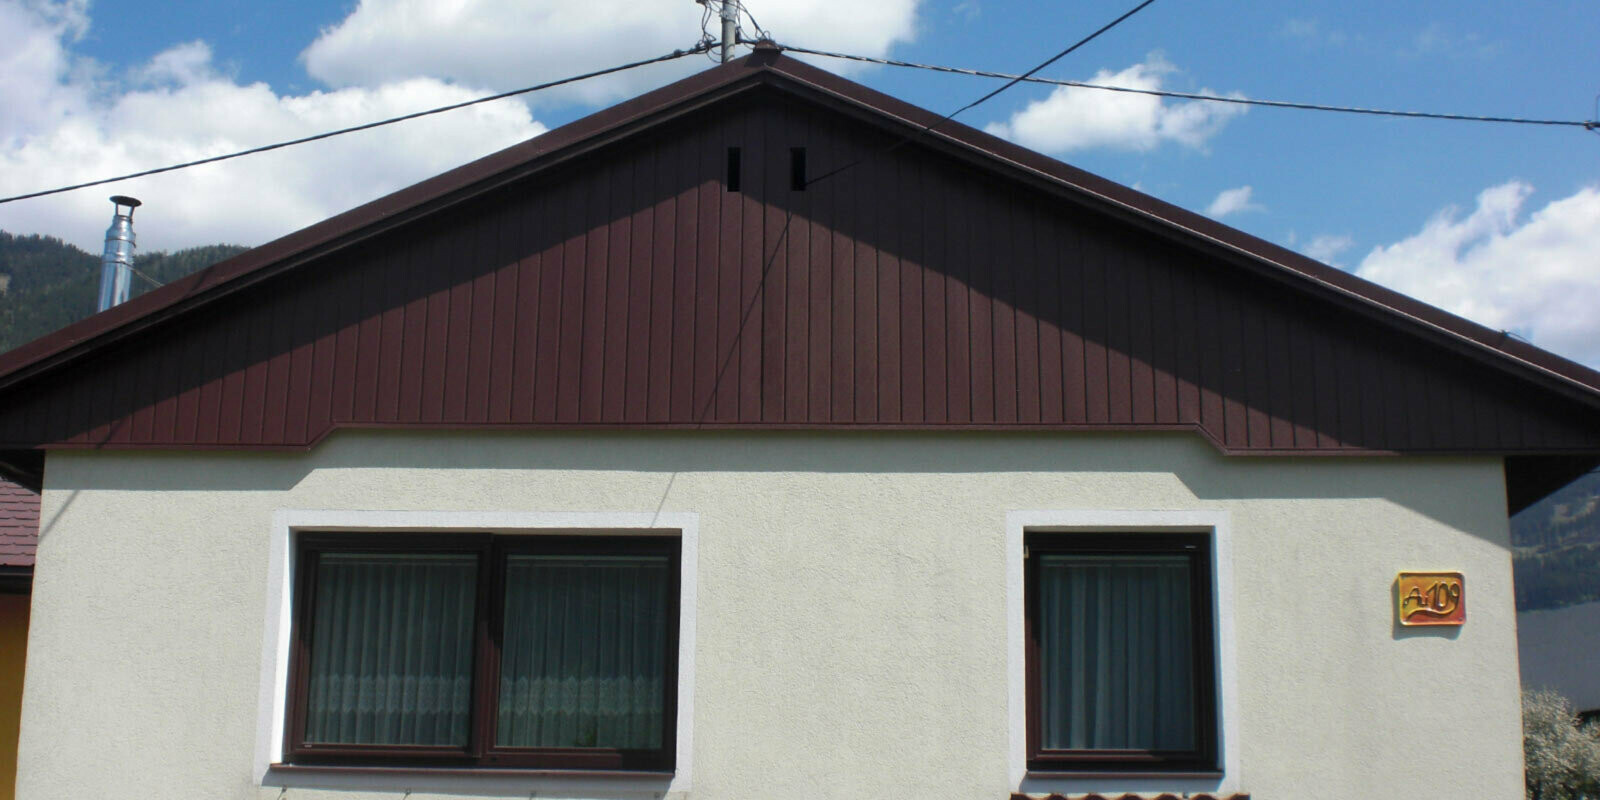 Rénovation de façade du pignon à l’aide de Sidings PREFA couleur brun, façade vert clair